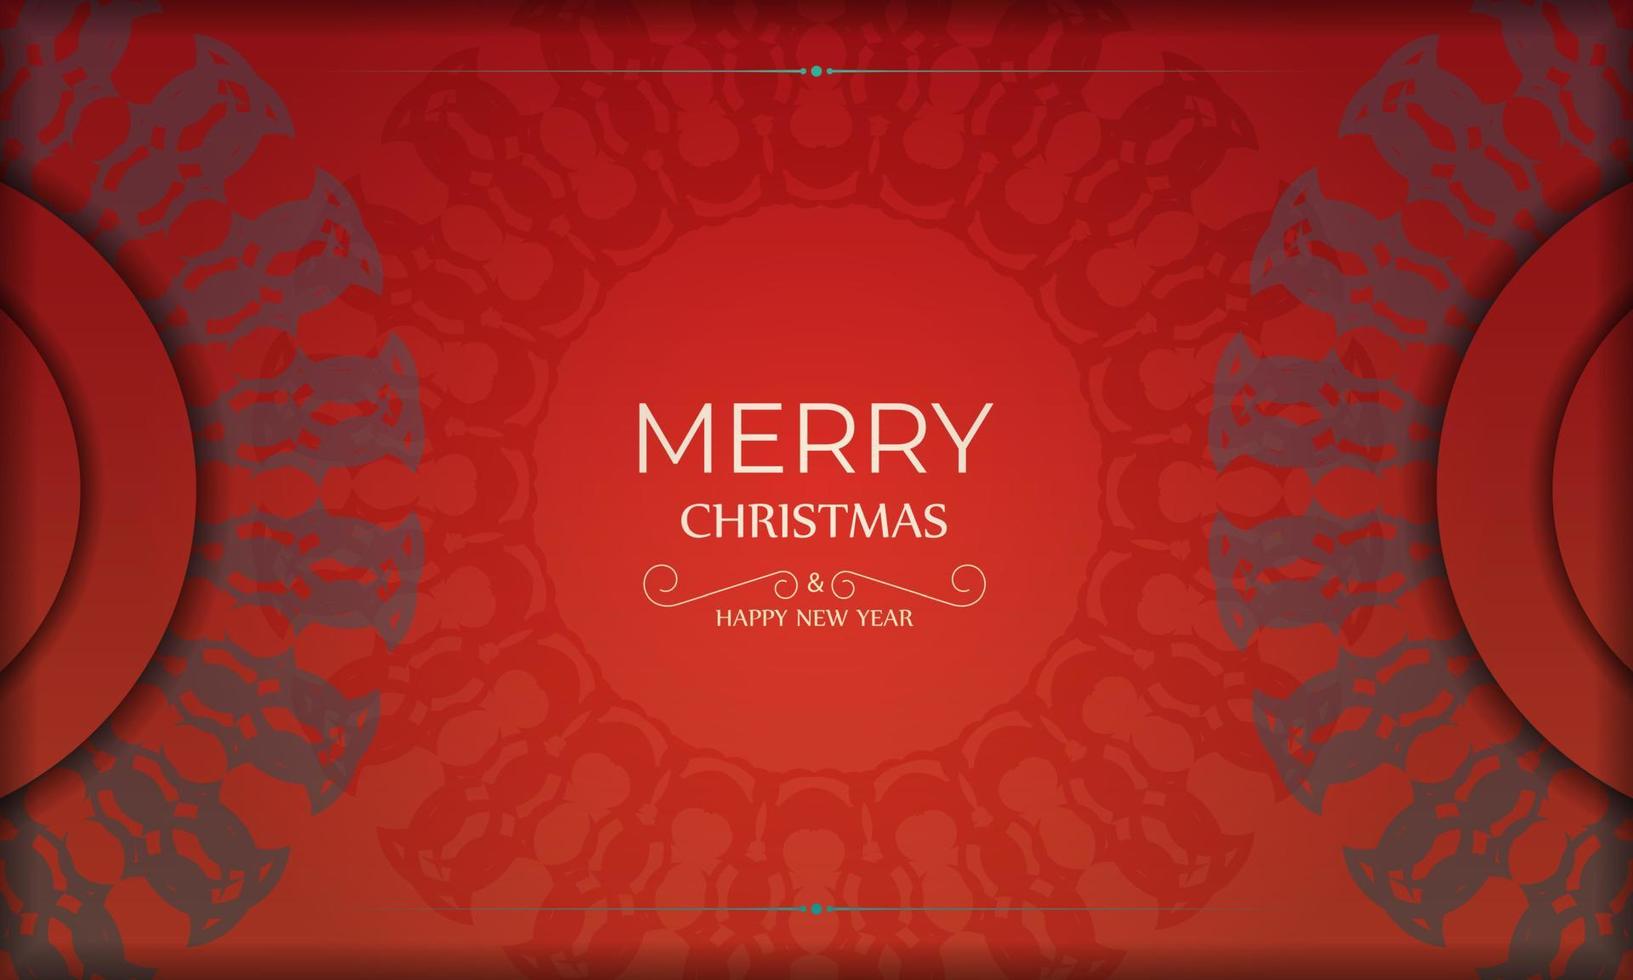 folleto feliz navidad y feliz año nuevo color rojo con patrón burdeos vintage vector